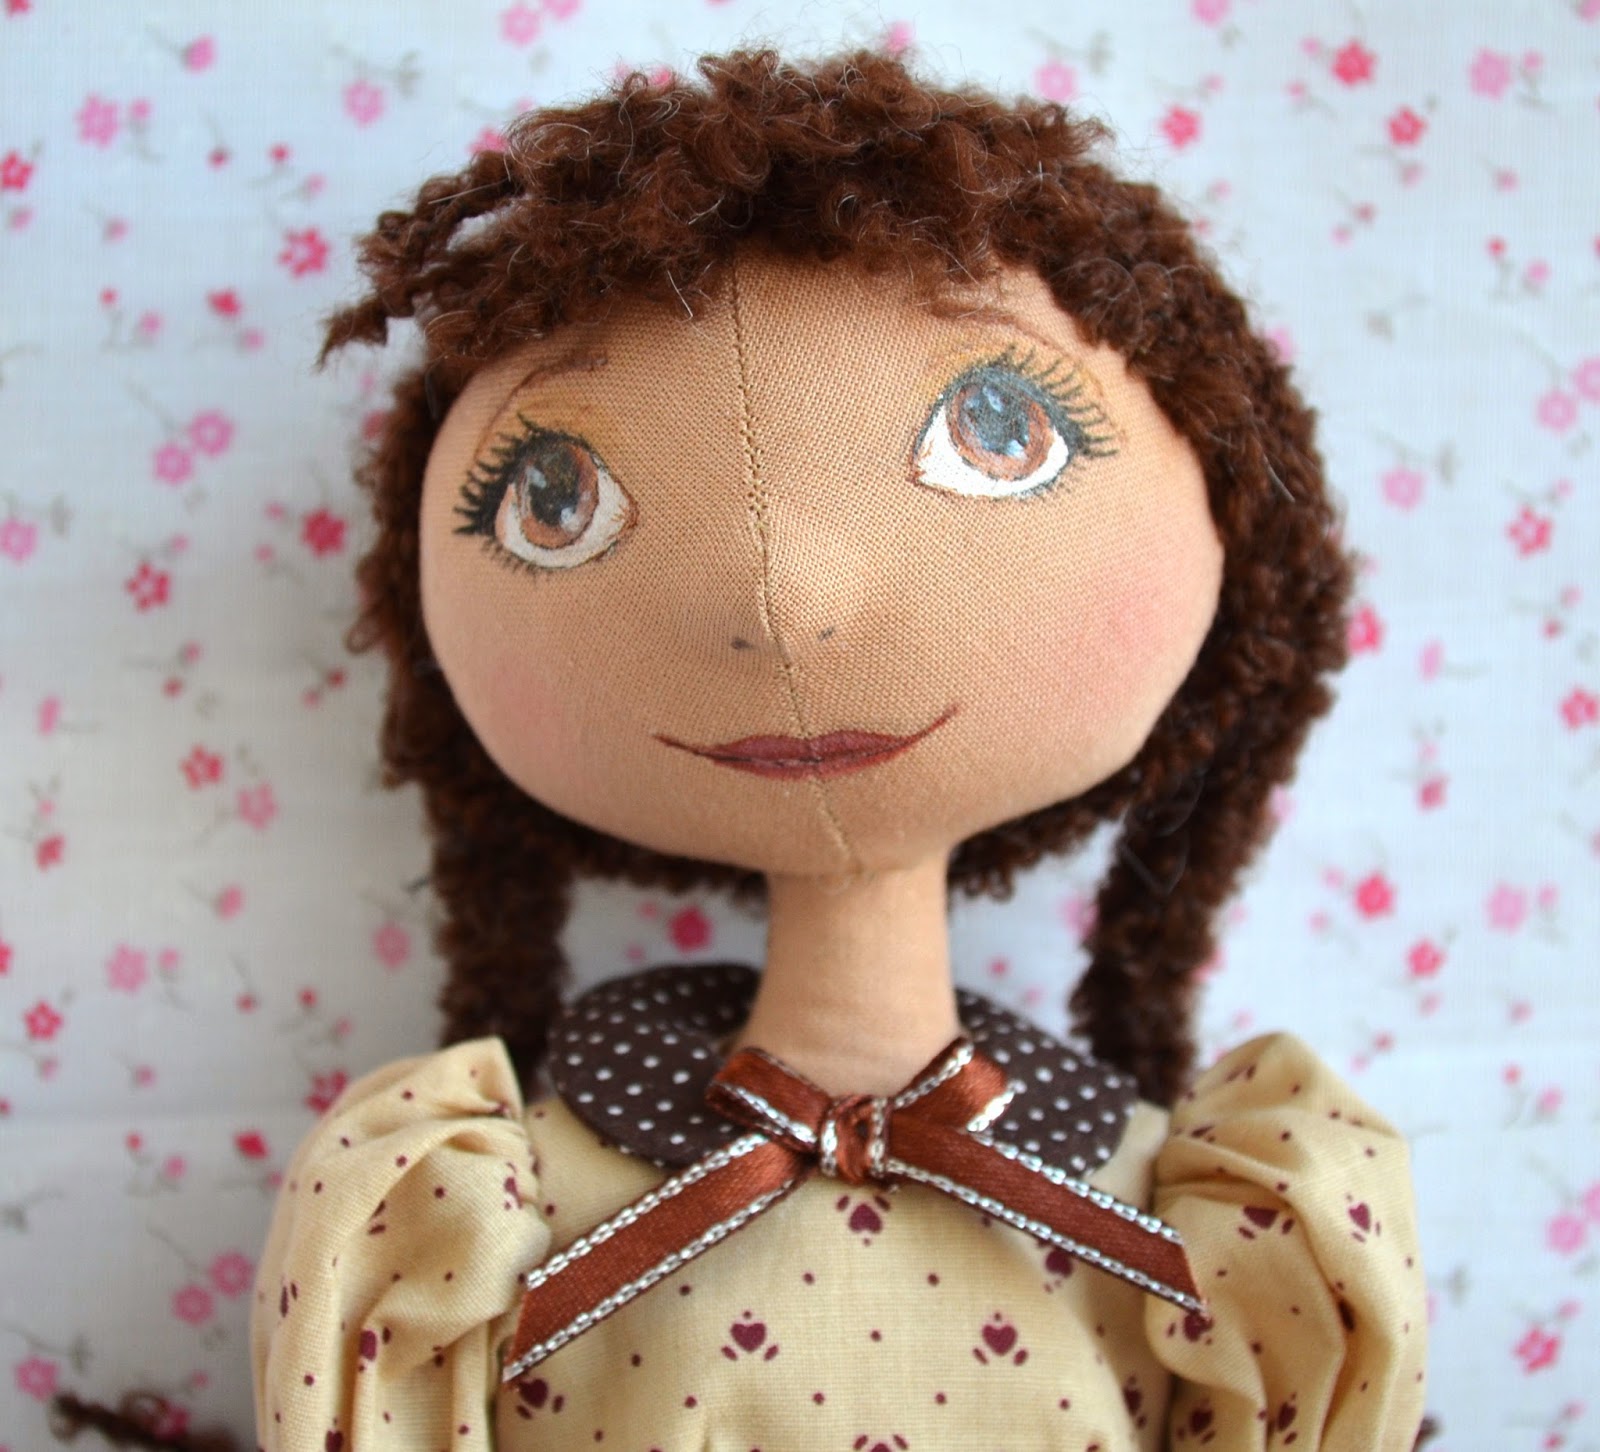 Текстильная. Текстильная кукла. Текстильная кукла мастер класс. Текстильные куклы своими руками. Текстильная кукла девочка.